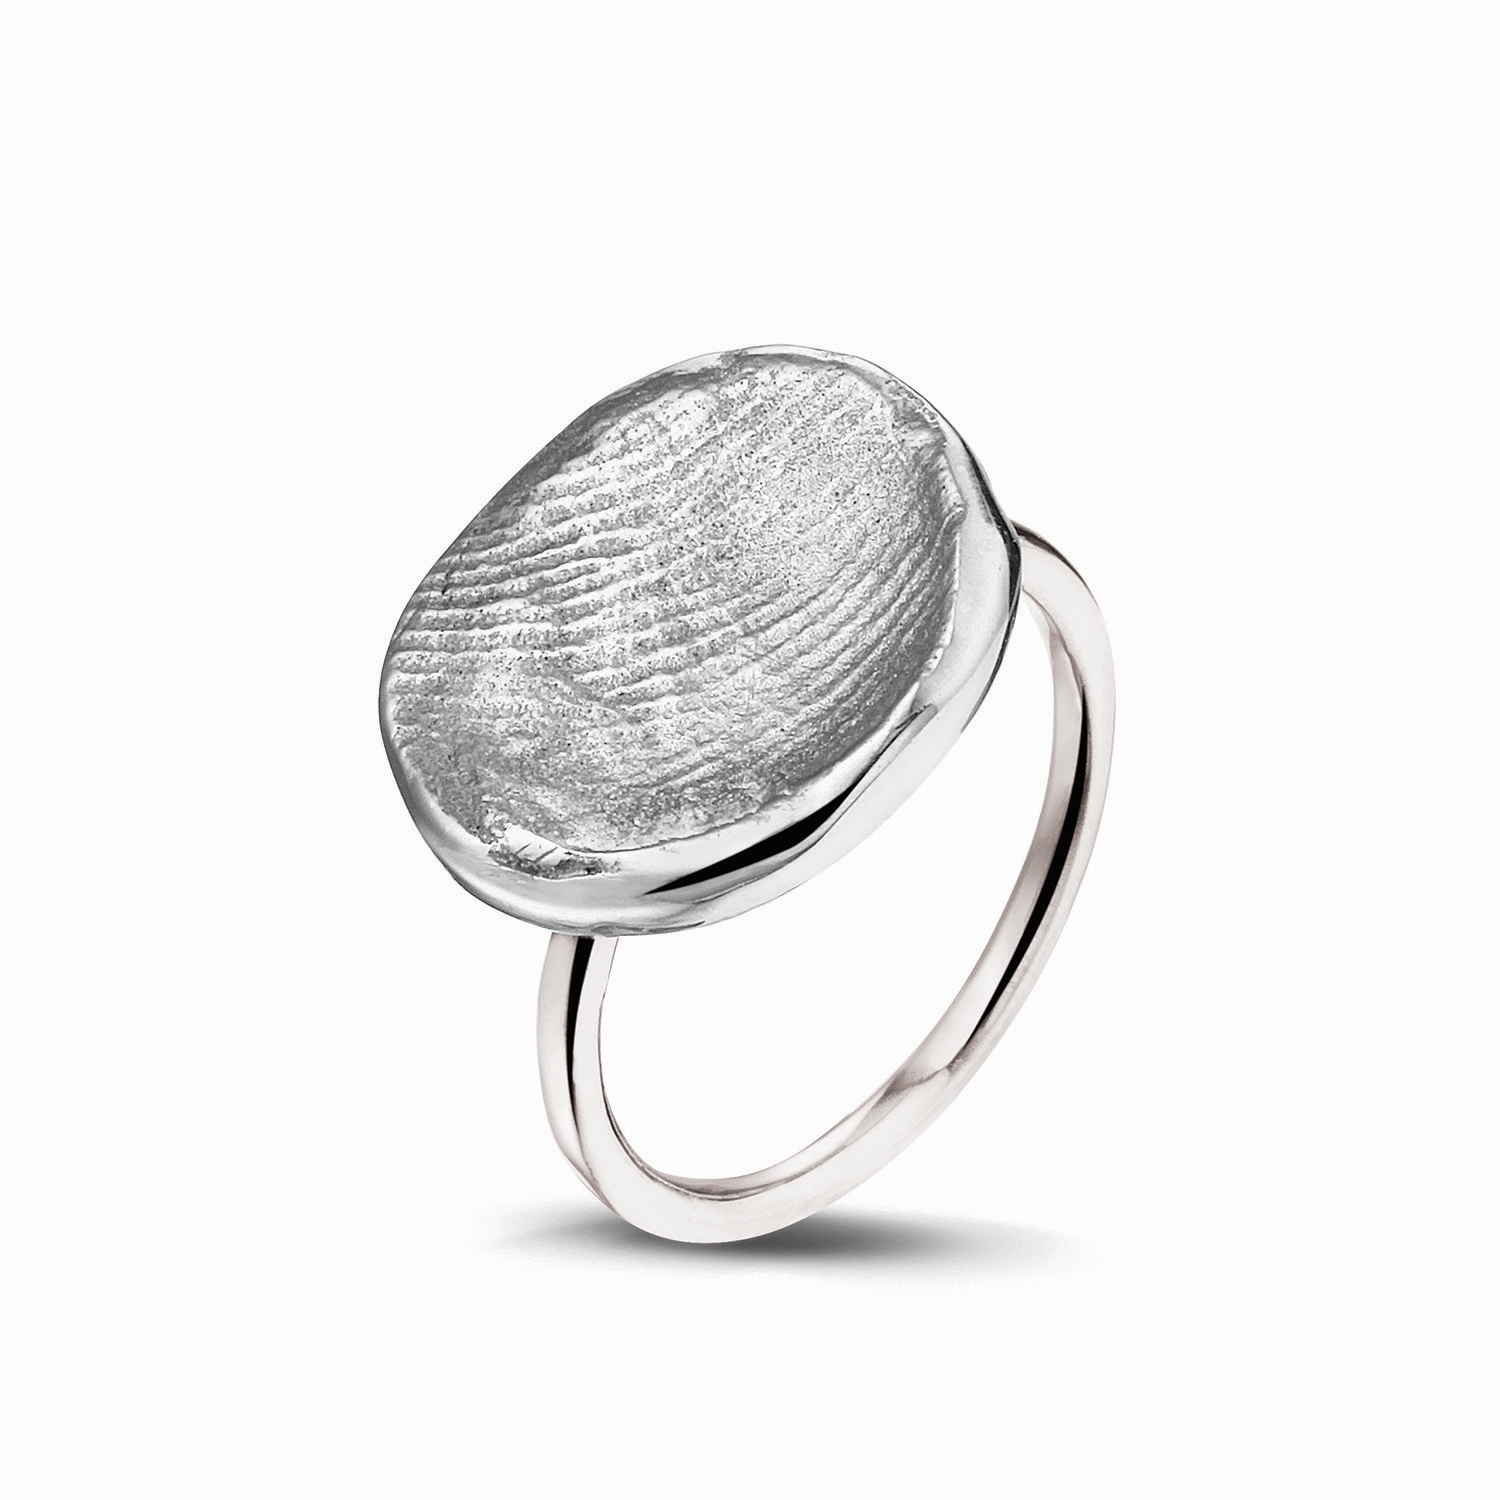 Organic Fingerprint Ring Silver/White gold